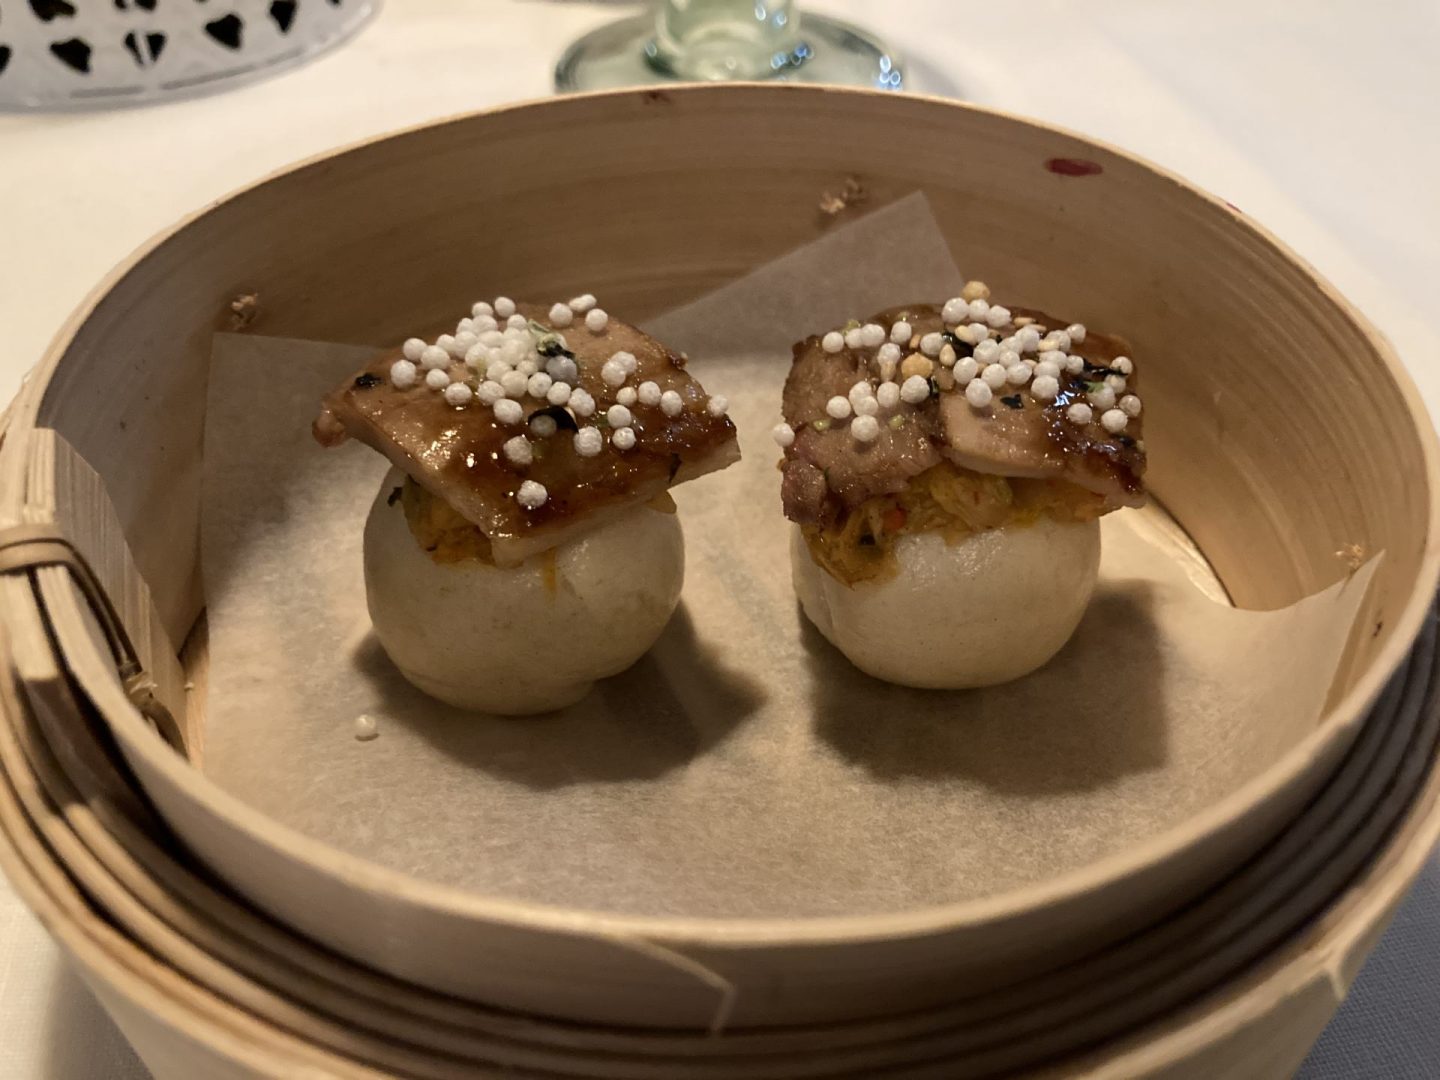 Erfahrung Bewertung Kritik Iuma Dortmund Dinner Experience Baozi Kimchi Schweinebauch Foodblog Sternestulle